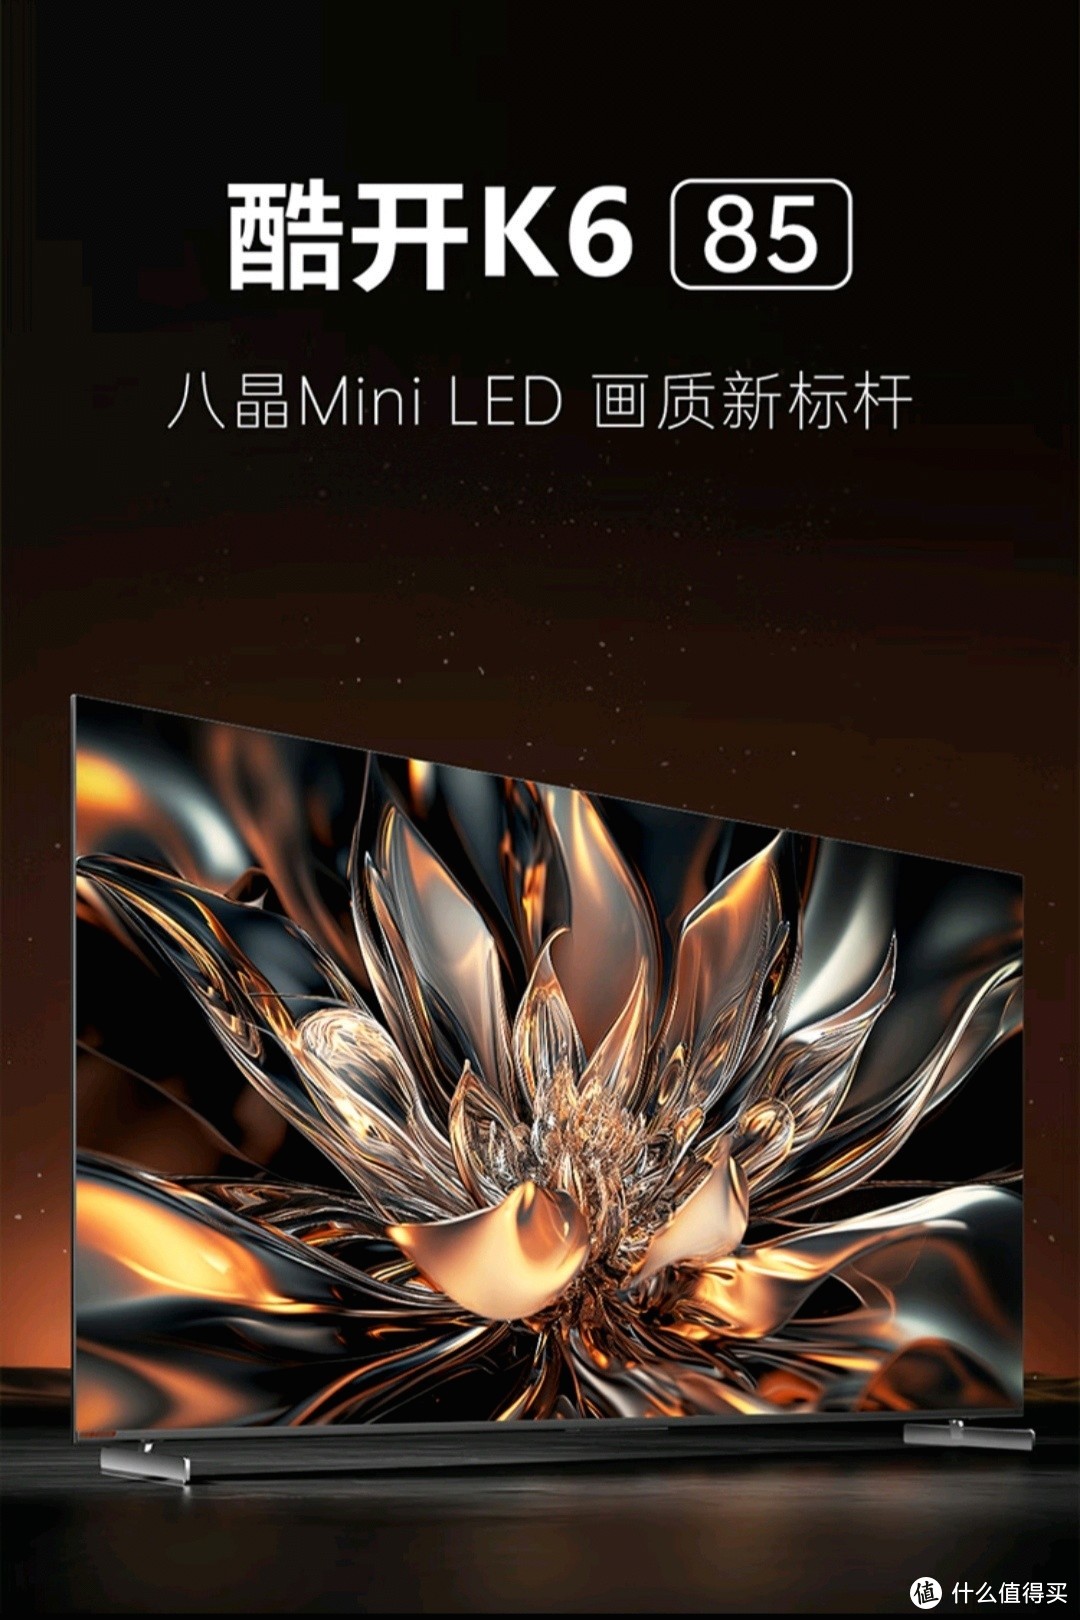 创维酷开K6 Mini LED电视——性价比与先进技术的完美结合